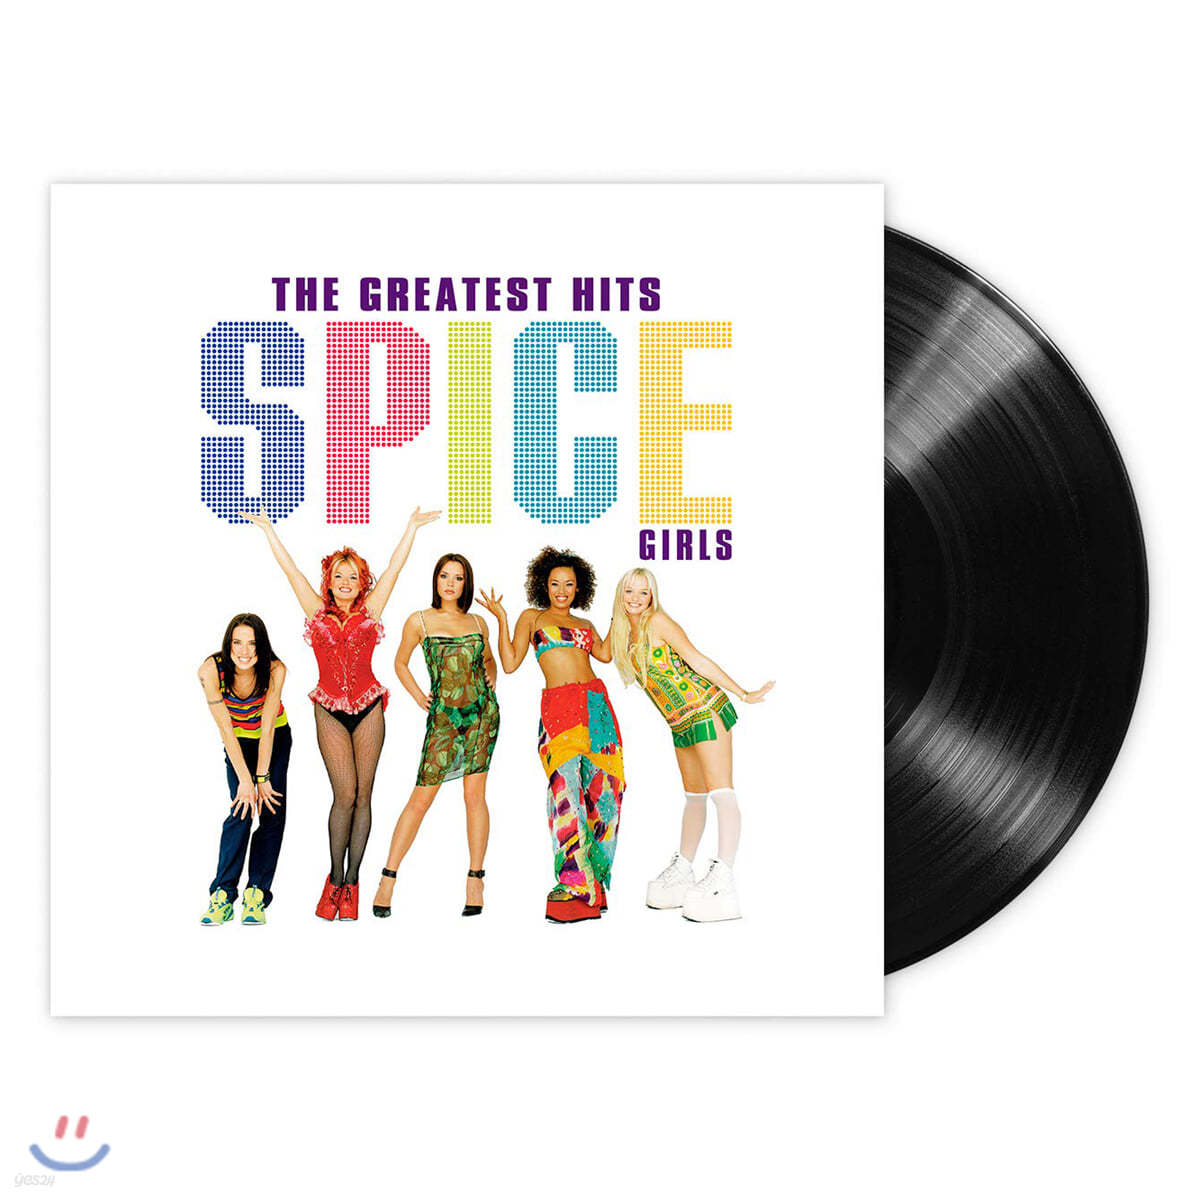 Spice Girls (스파이스 걸즈) - The Greatest Hits [LP]